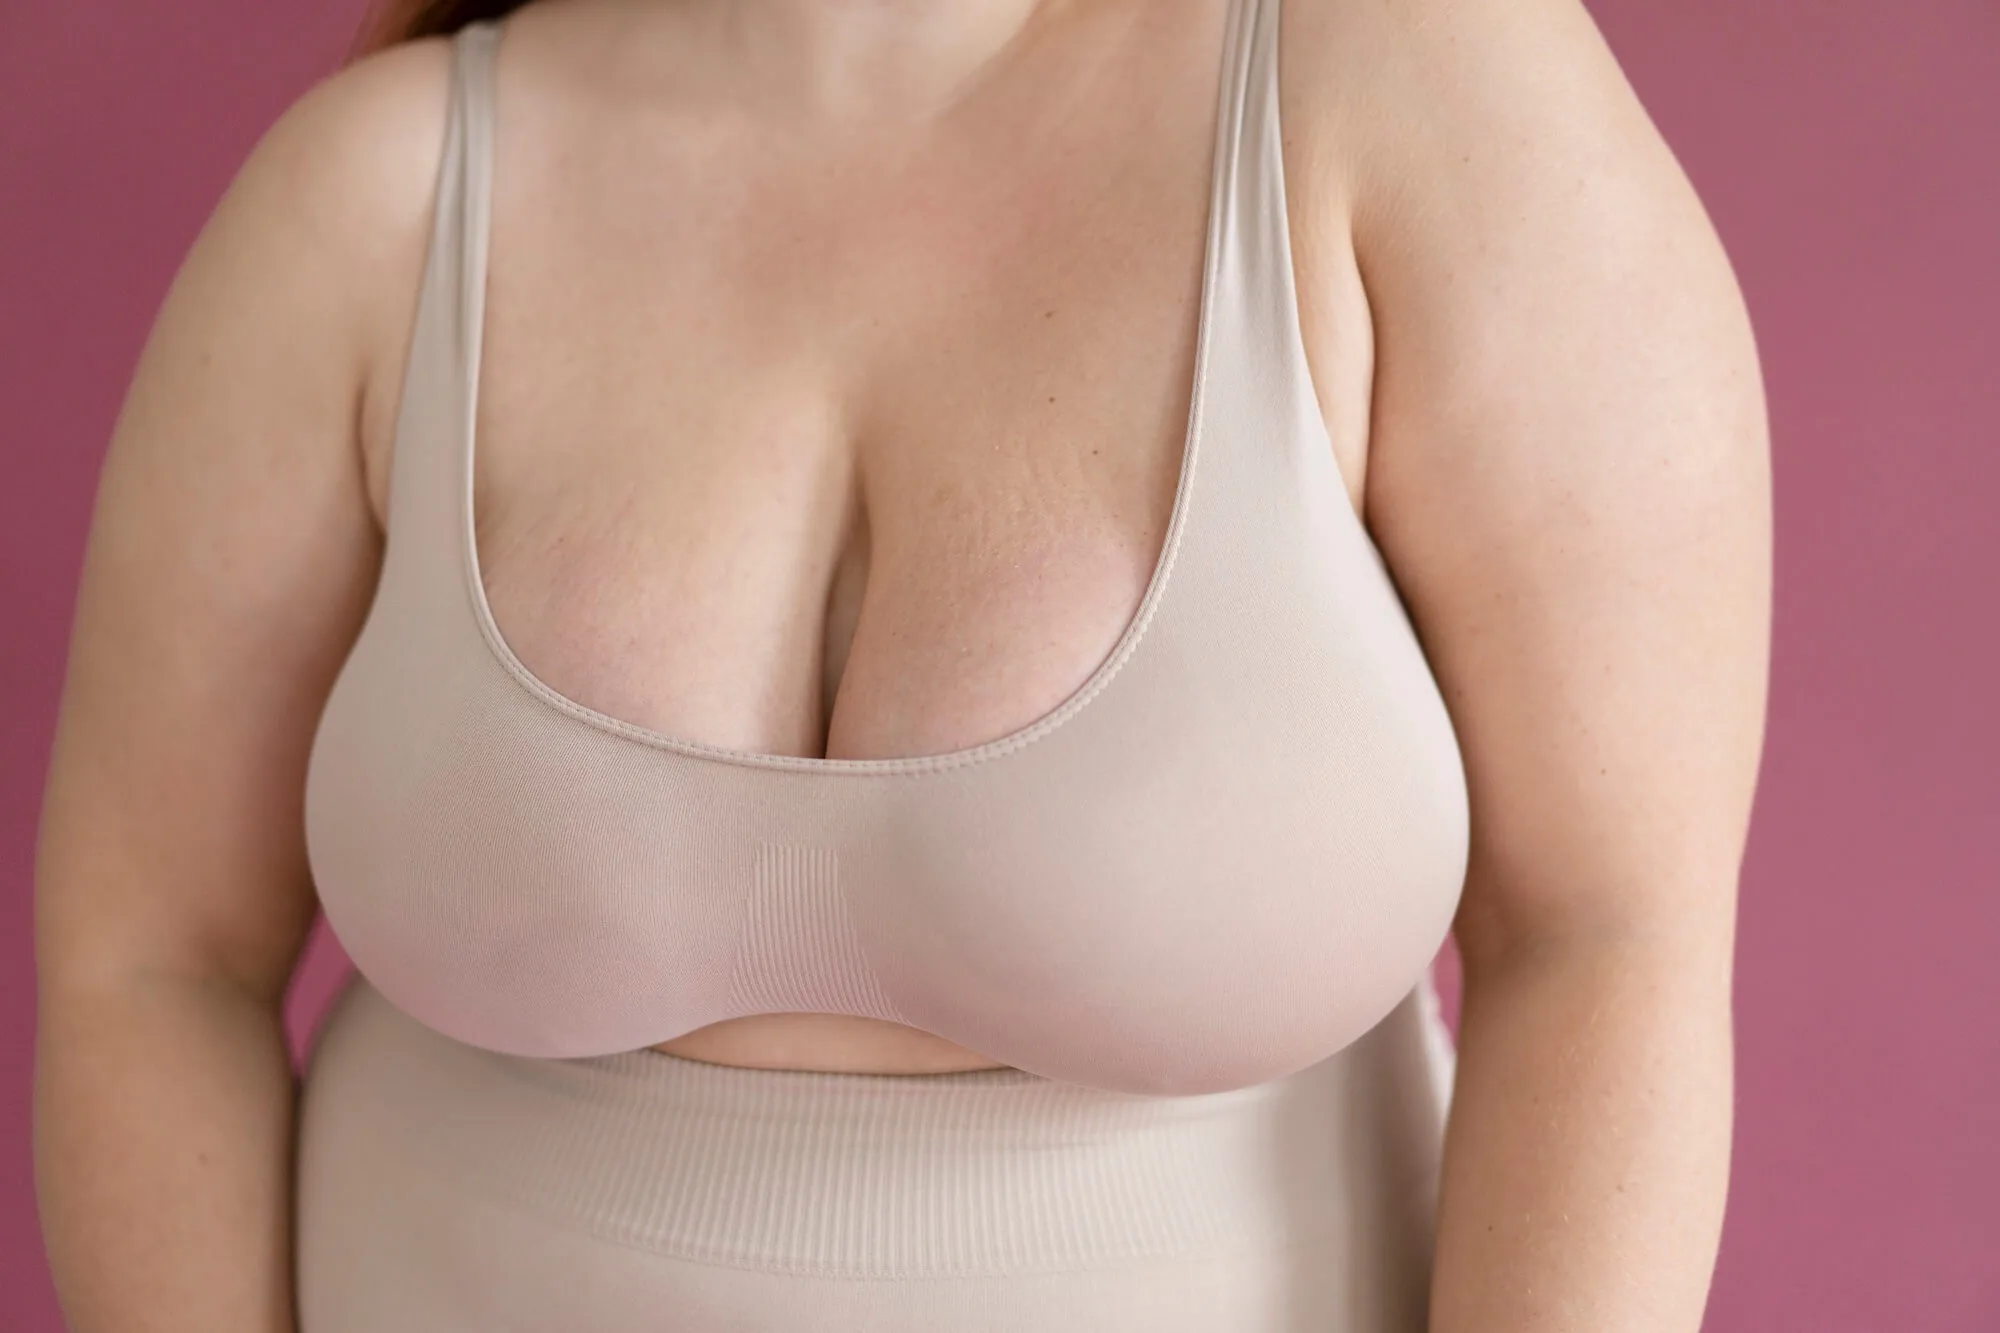 Cirurgia de redução de mama pelo plano de saúde